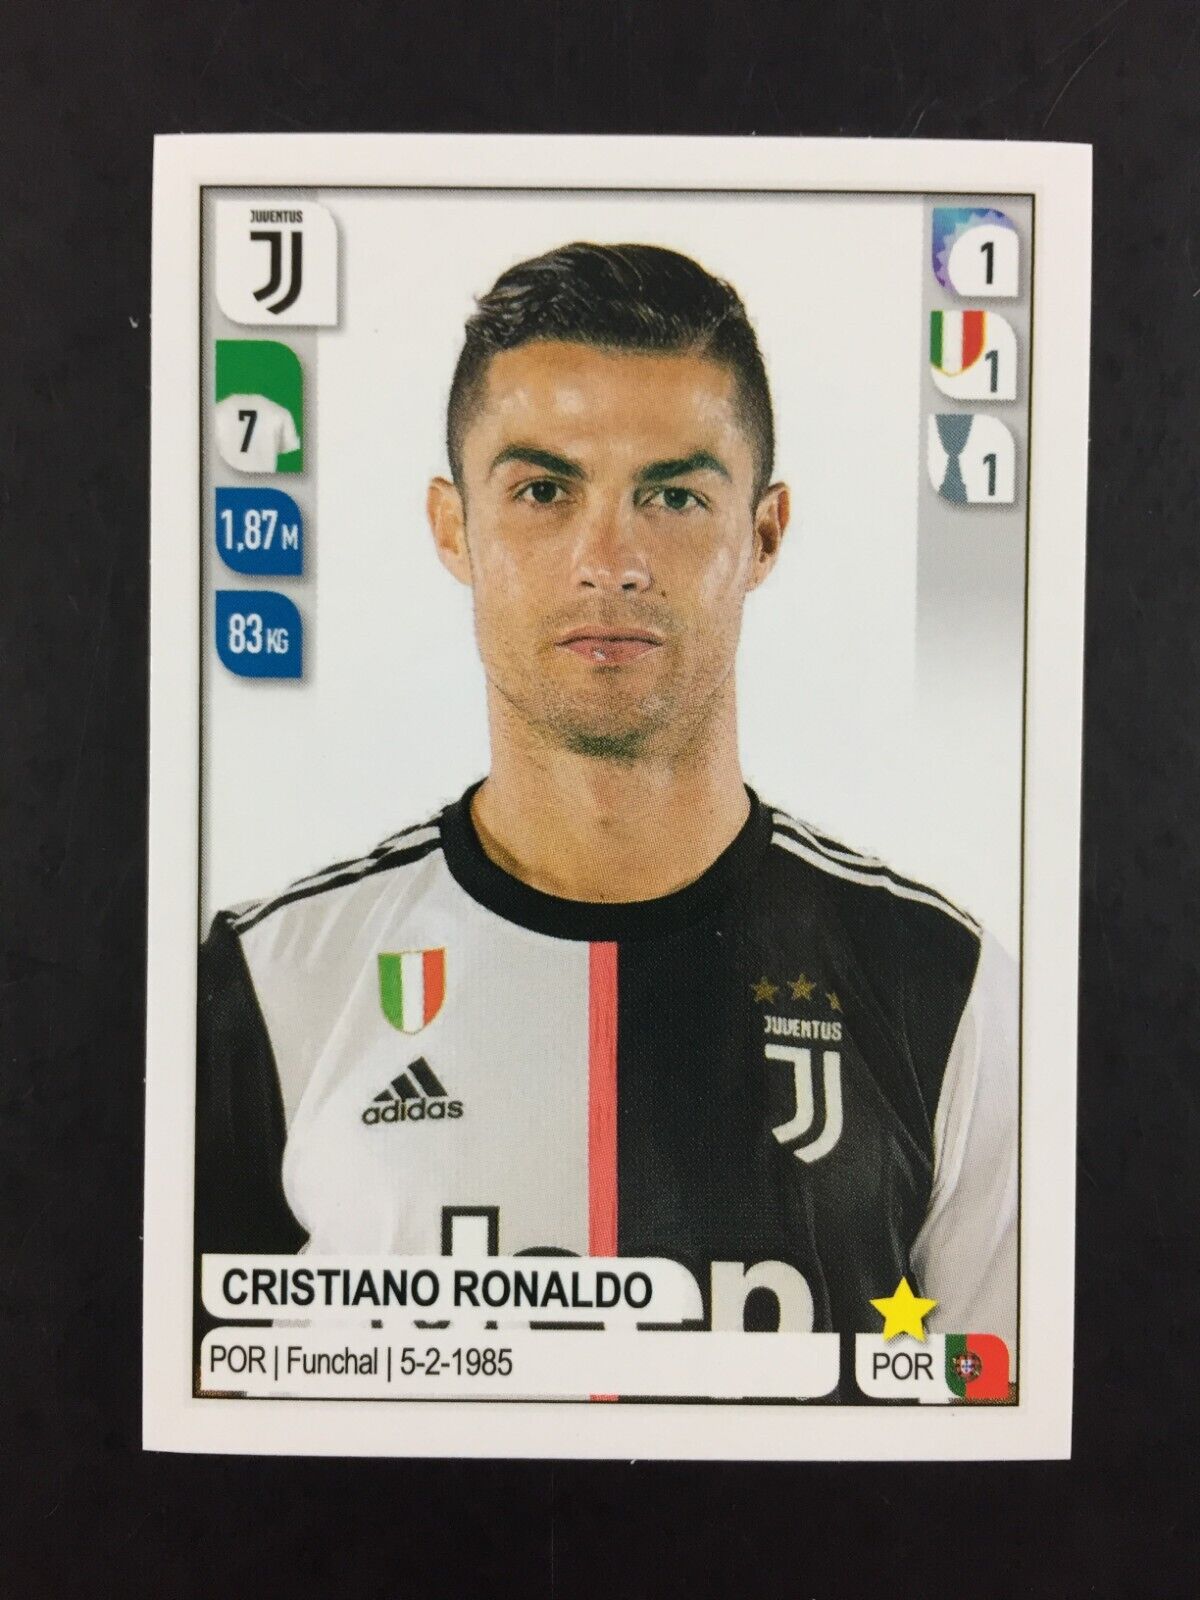 2020 Cristiano Ronaldo Panini Calciatori Sticker (19-20) #259